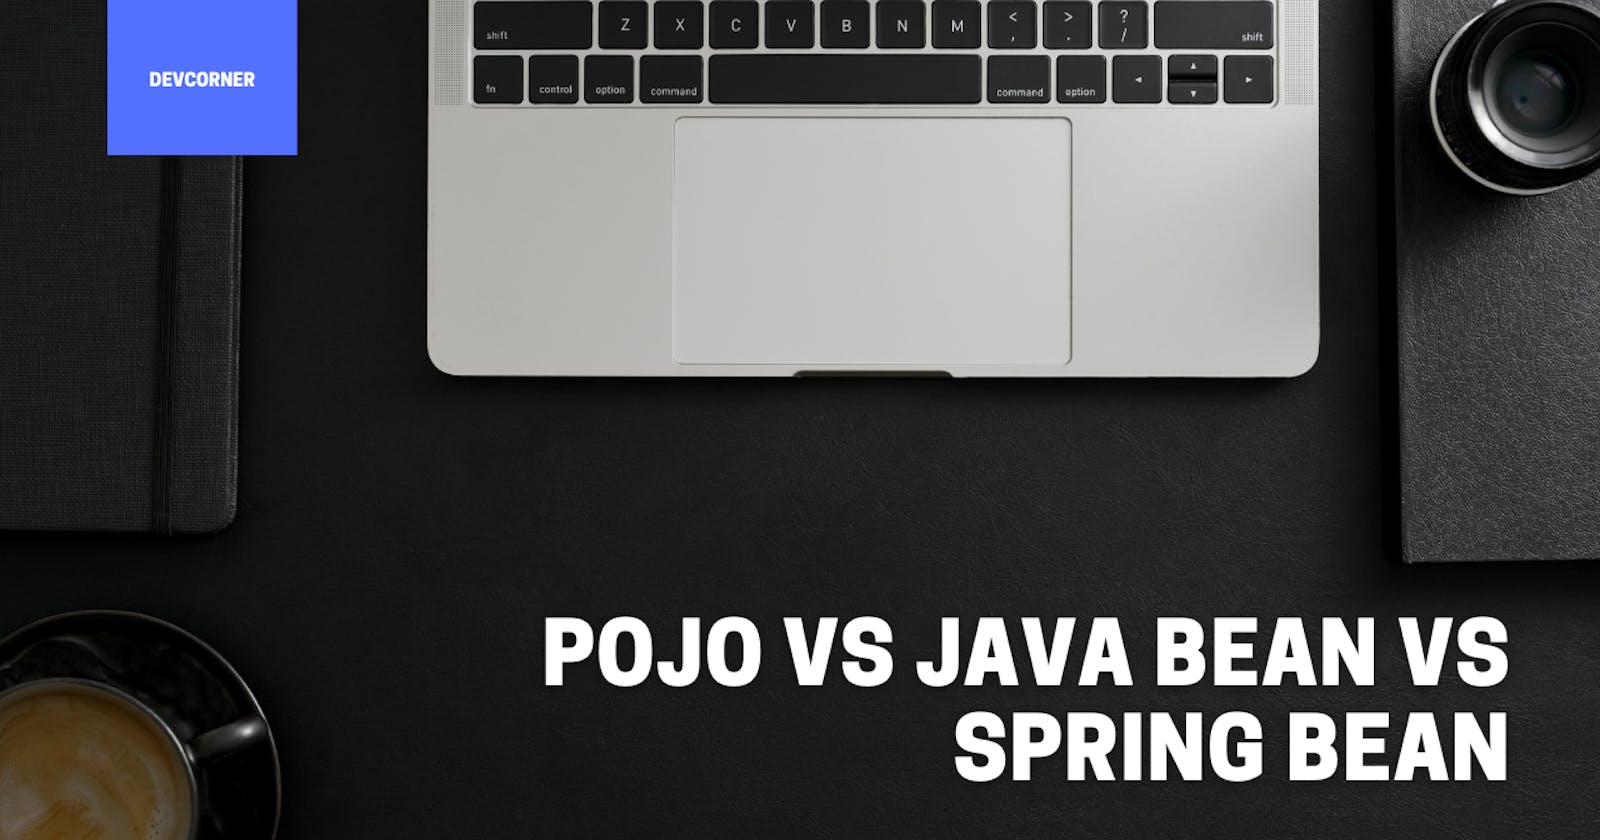 POJO vs Java Bean vs Spring Bean